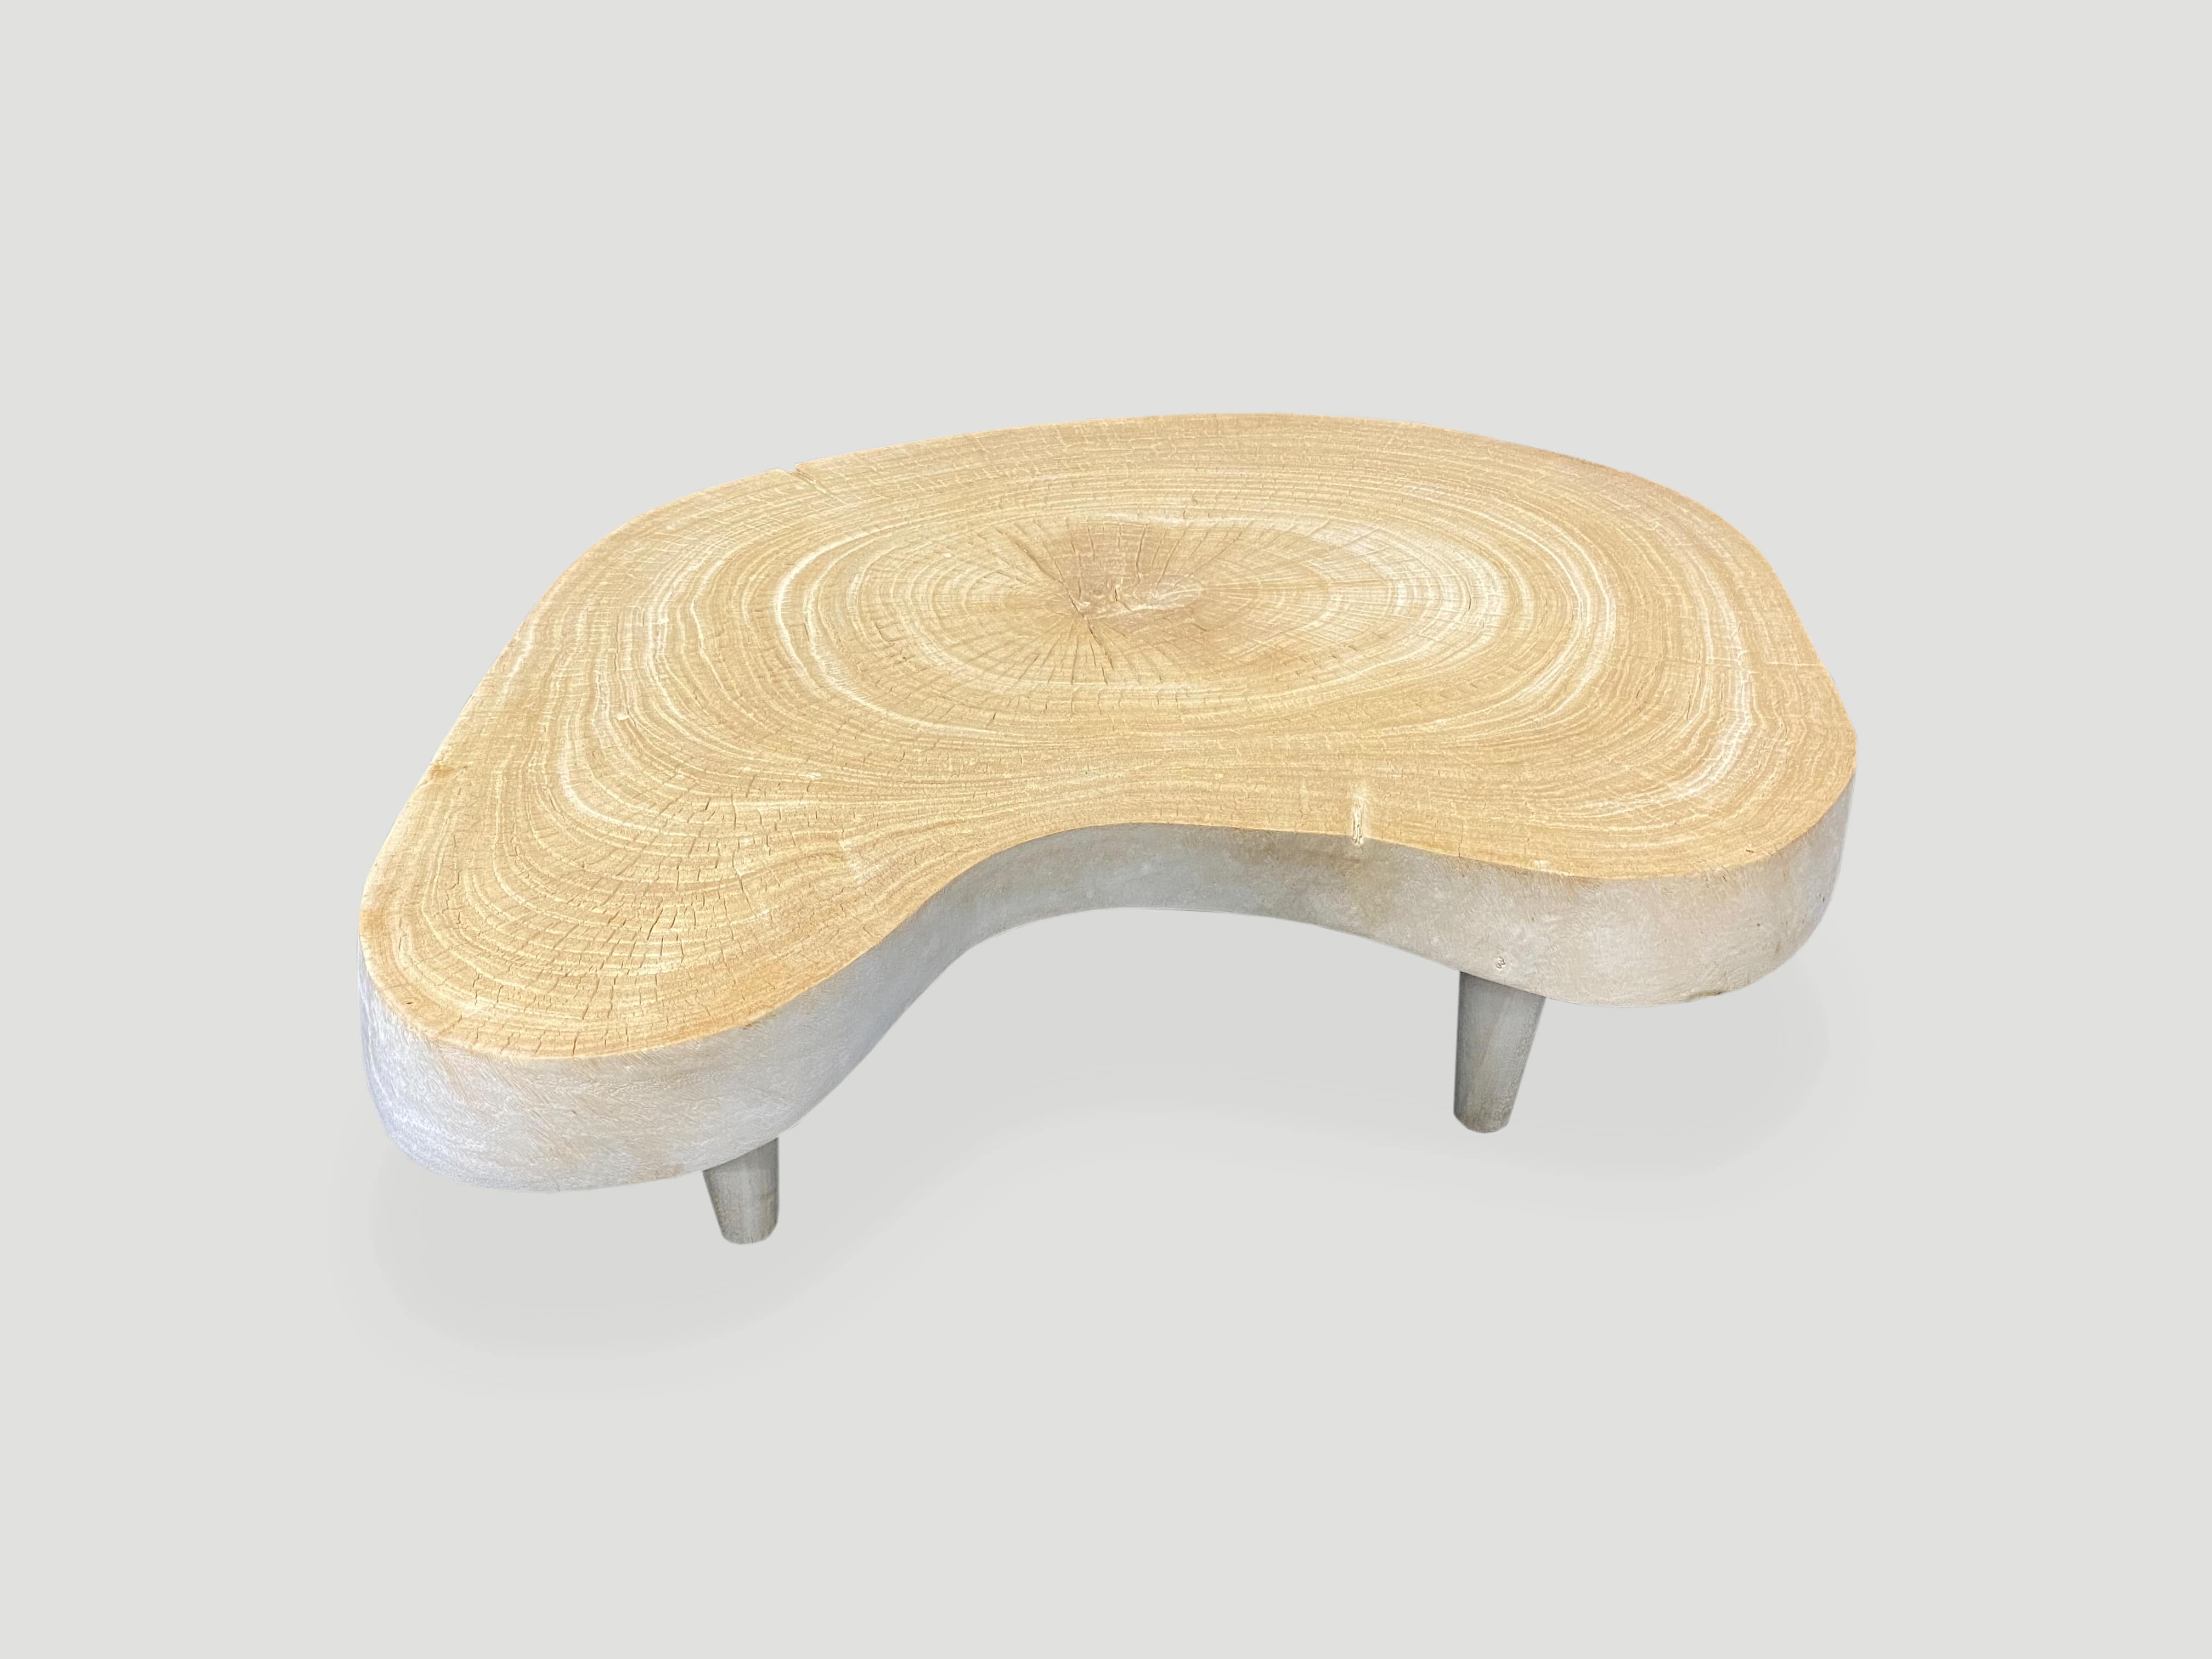 amorphous mid century modern teak wood coffee table